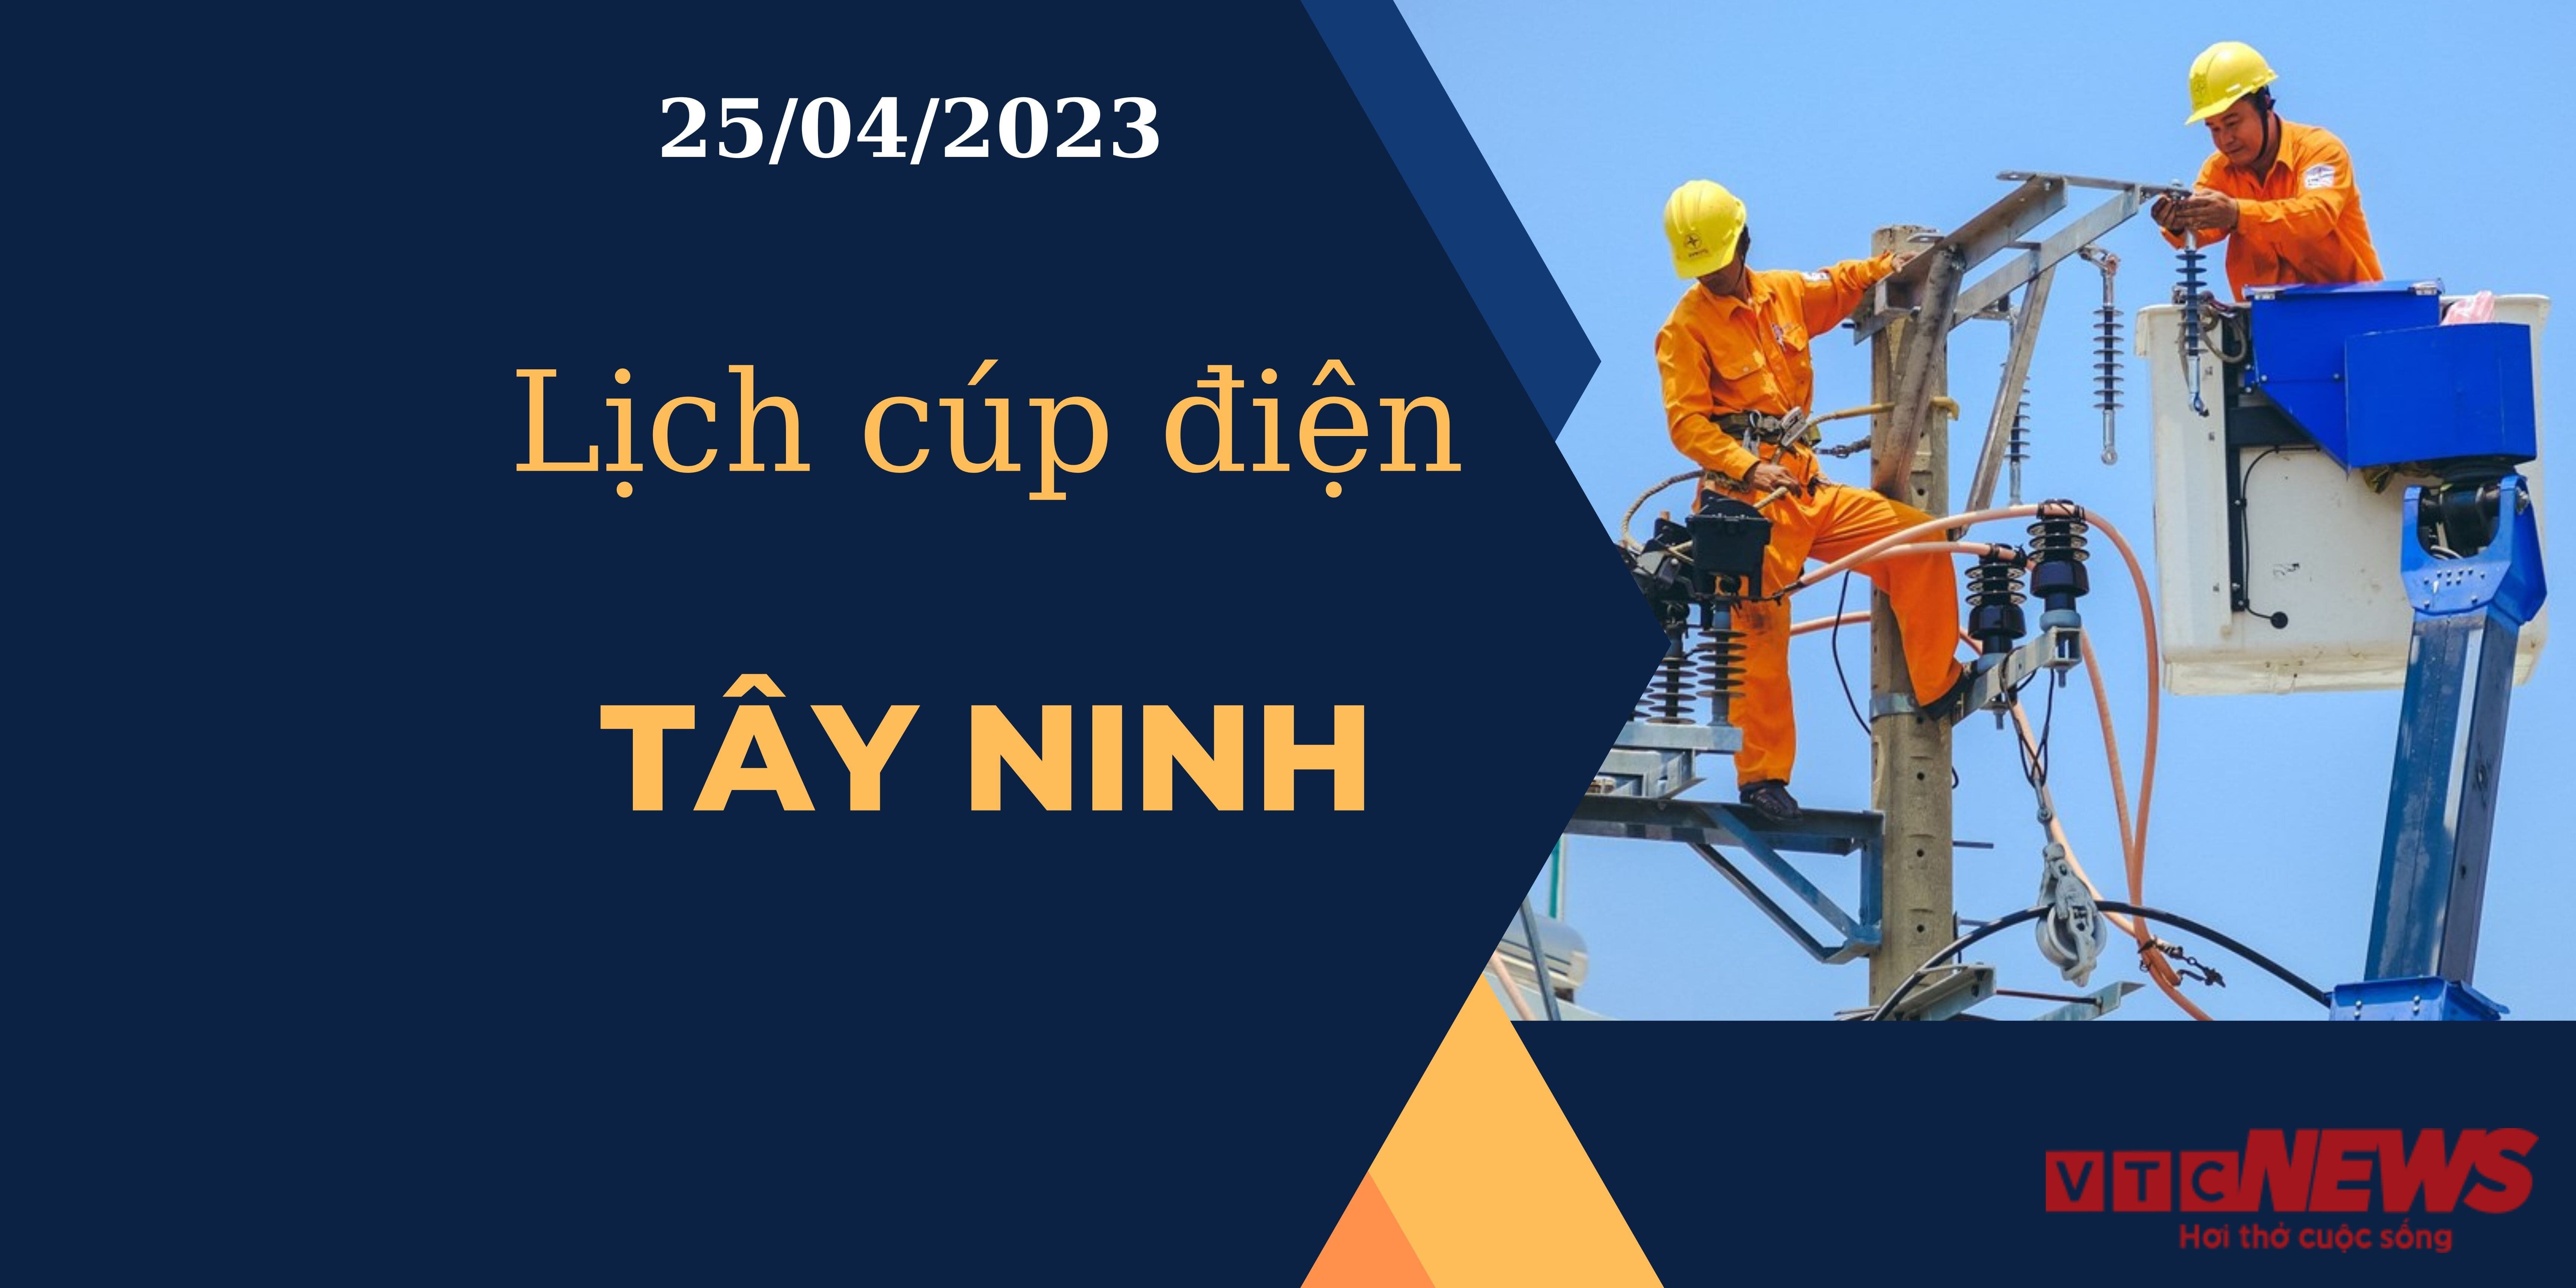 Lịch cúp điện hôm nay tại Tây Ninh ngày 25/04/2023 - 1